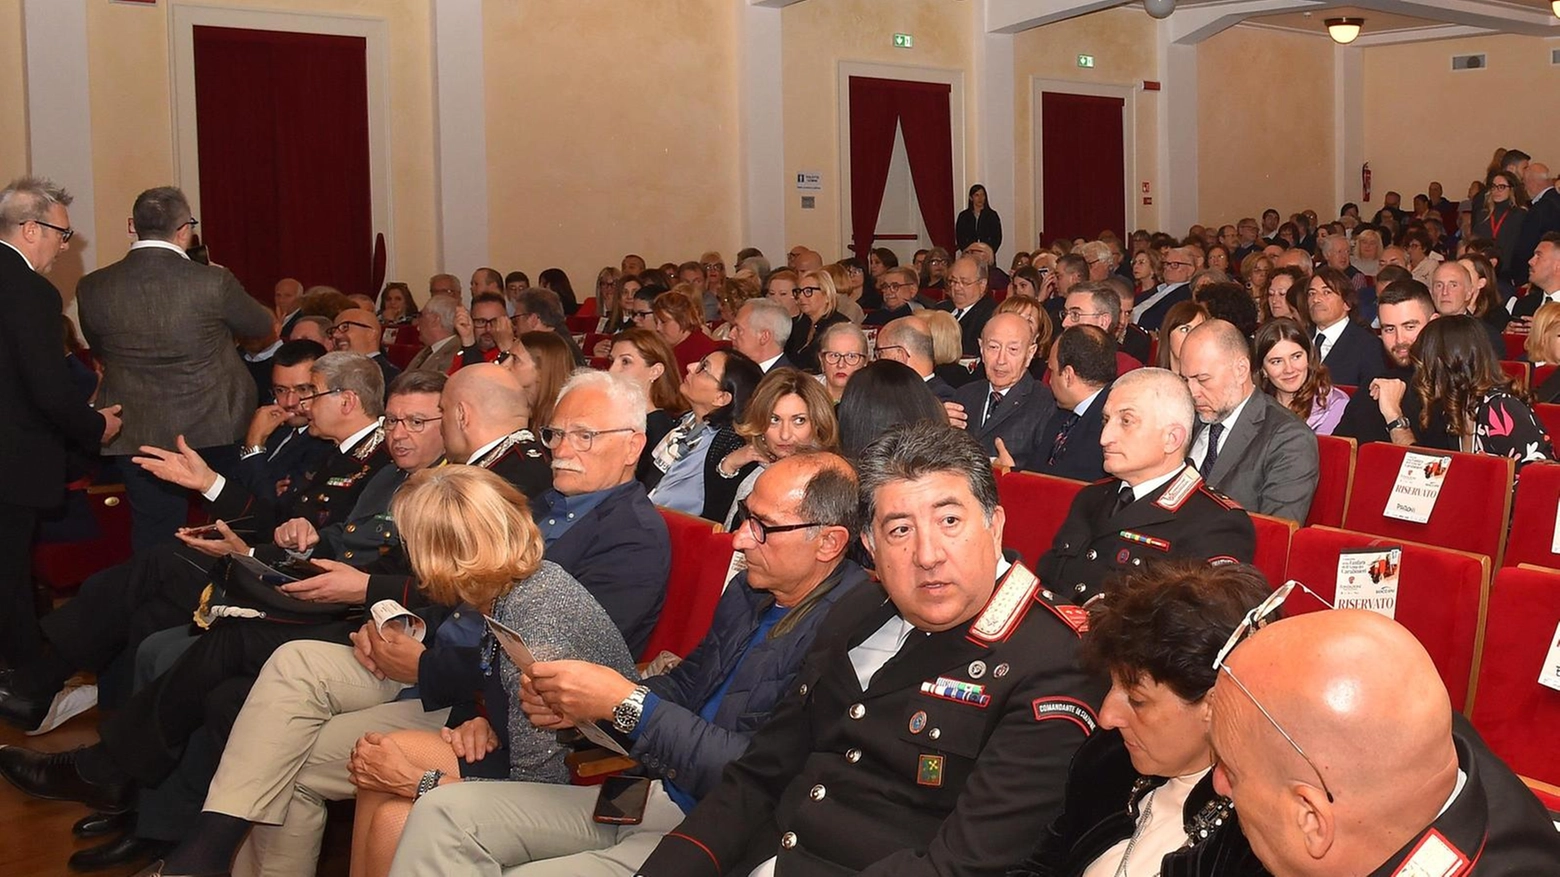 

"Gestire il Teatro Tirinnanzi di Legnano: un onore per Ad Management"